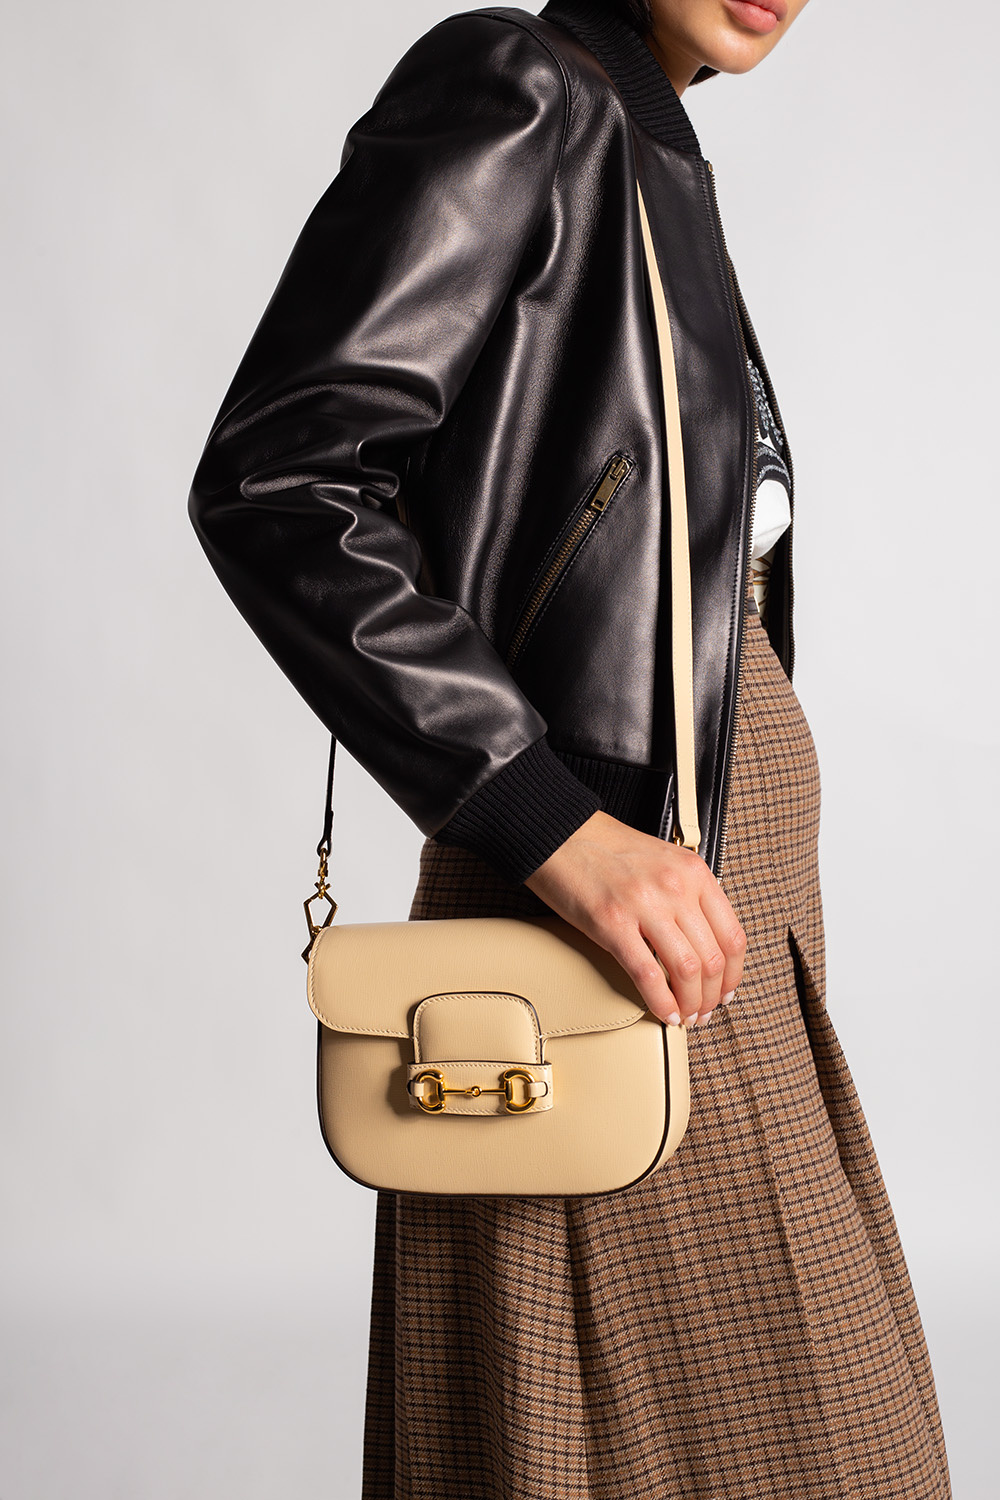 Gucci Horsebit 1955 Mini Shoulder Bag in Brown - Gucci